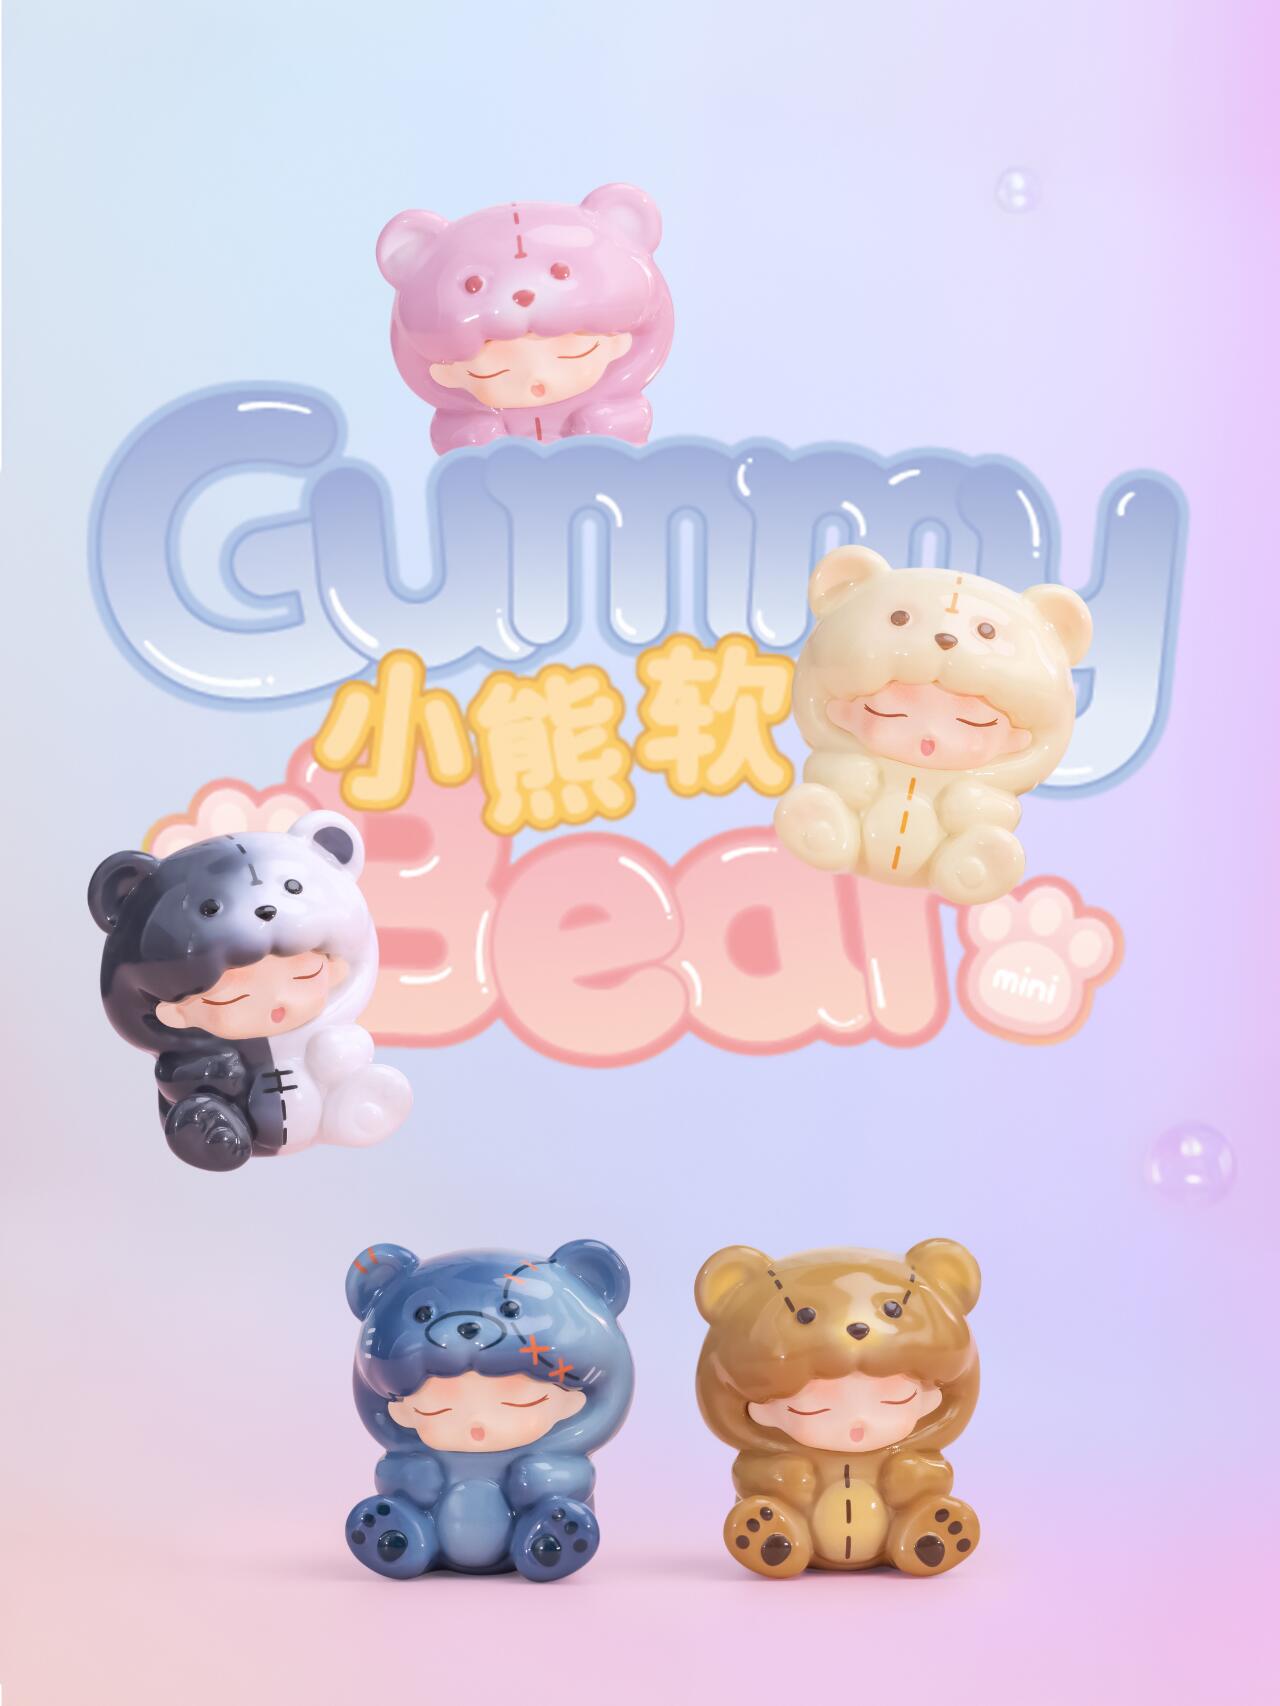 YUMO Gummy Bear Mini Beans Series Blind Box